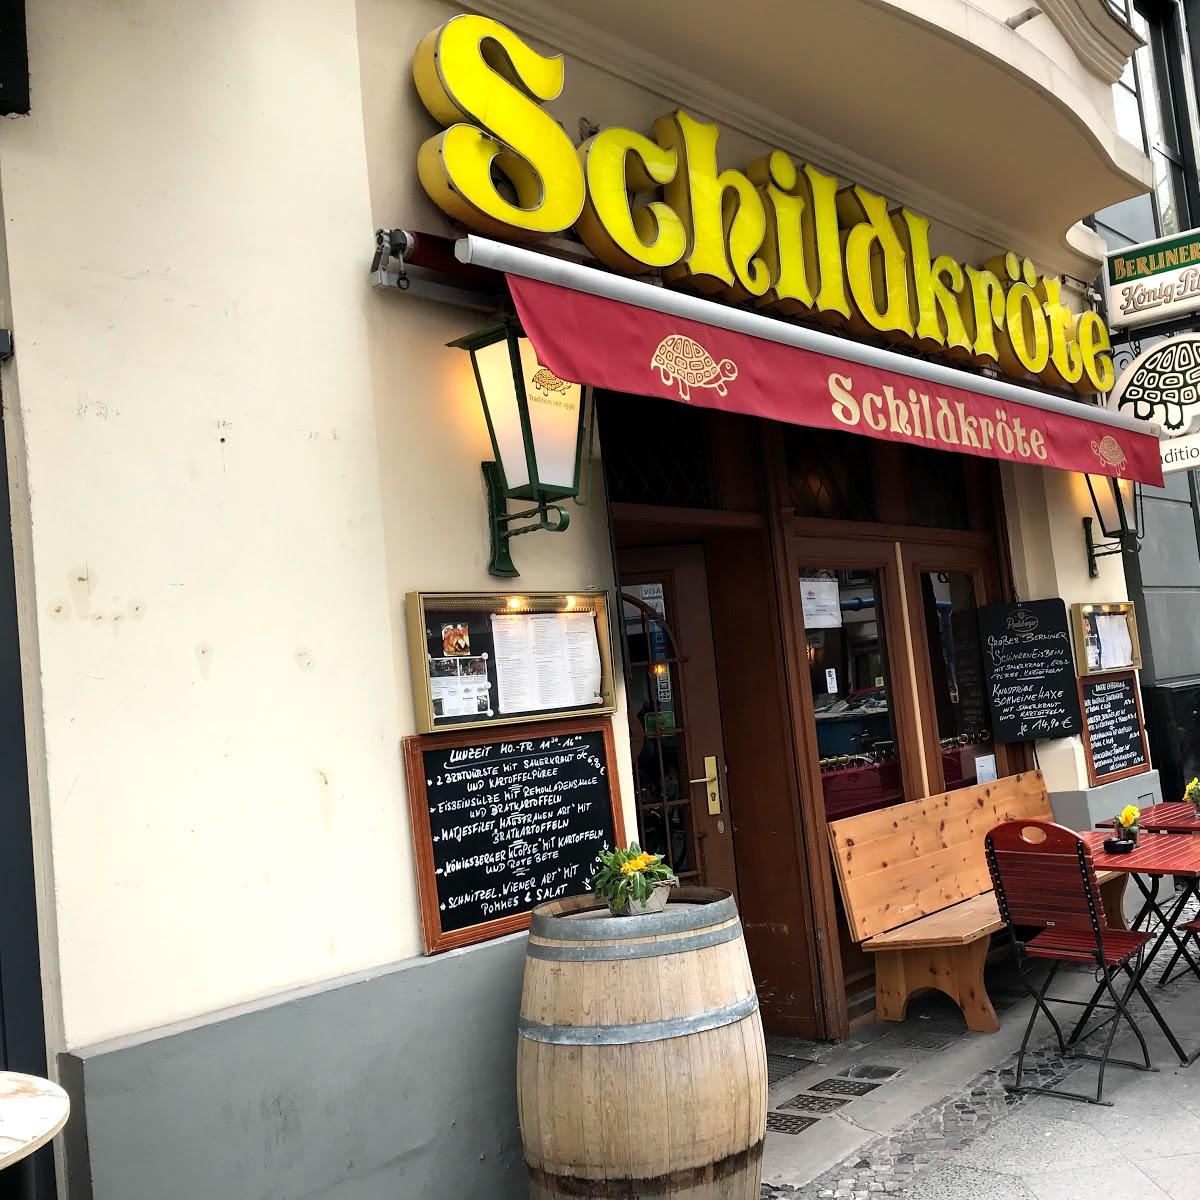 Restaurant "Schildkröte" in  Berlin